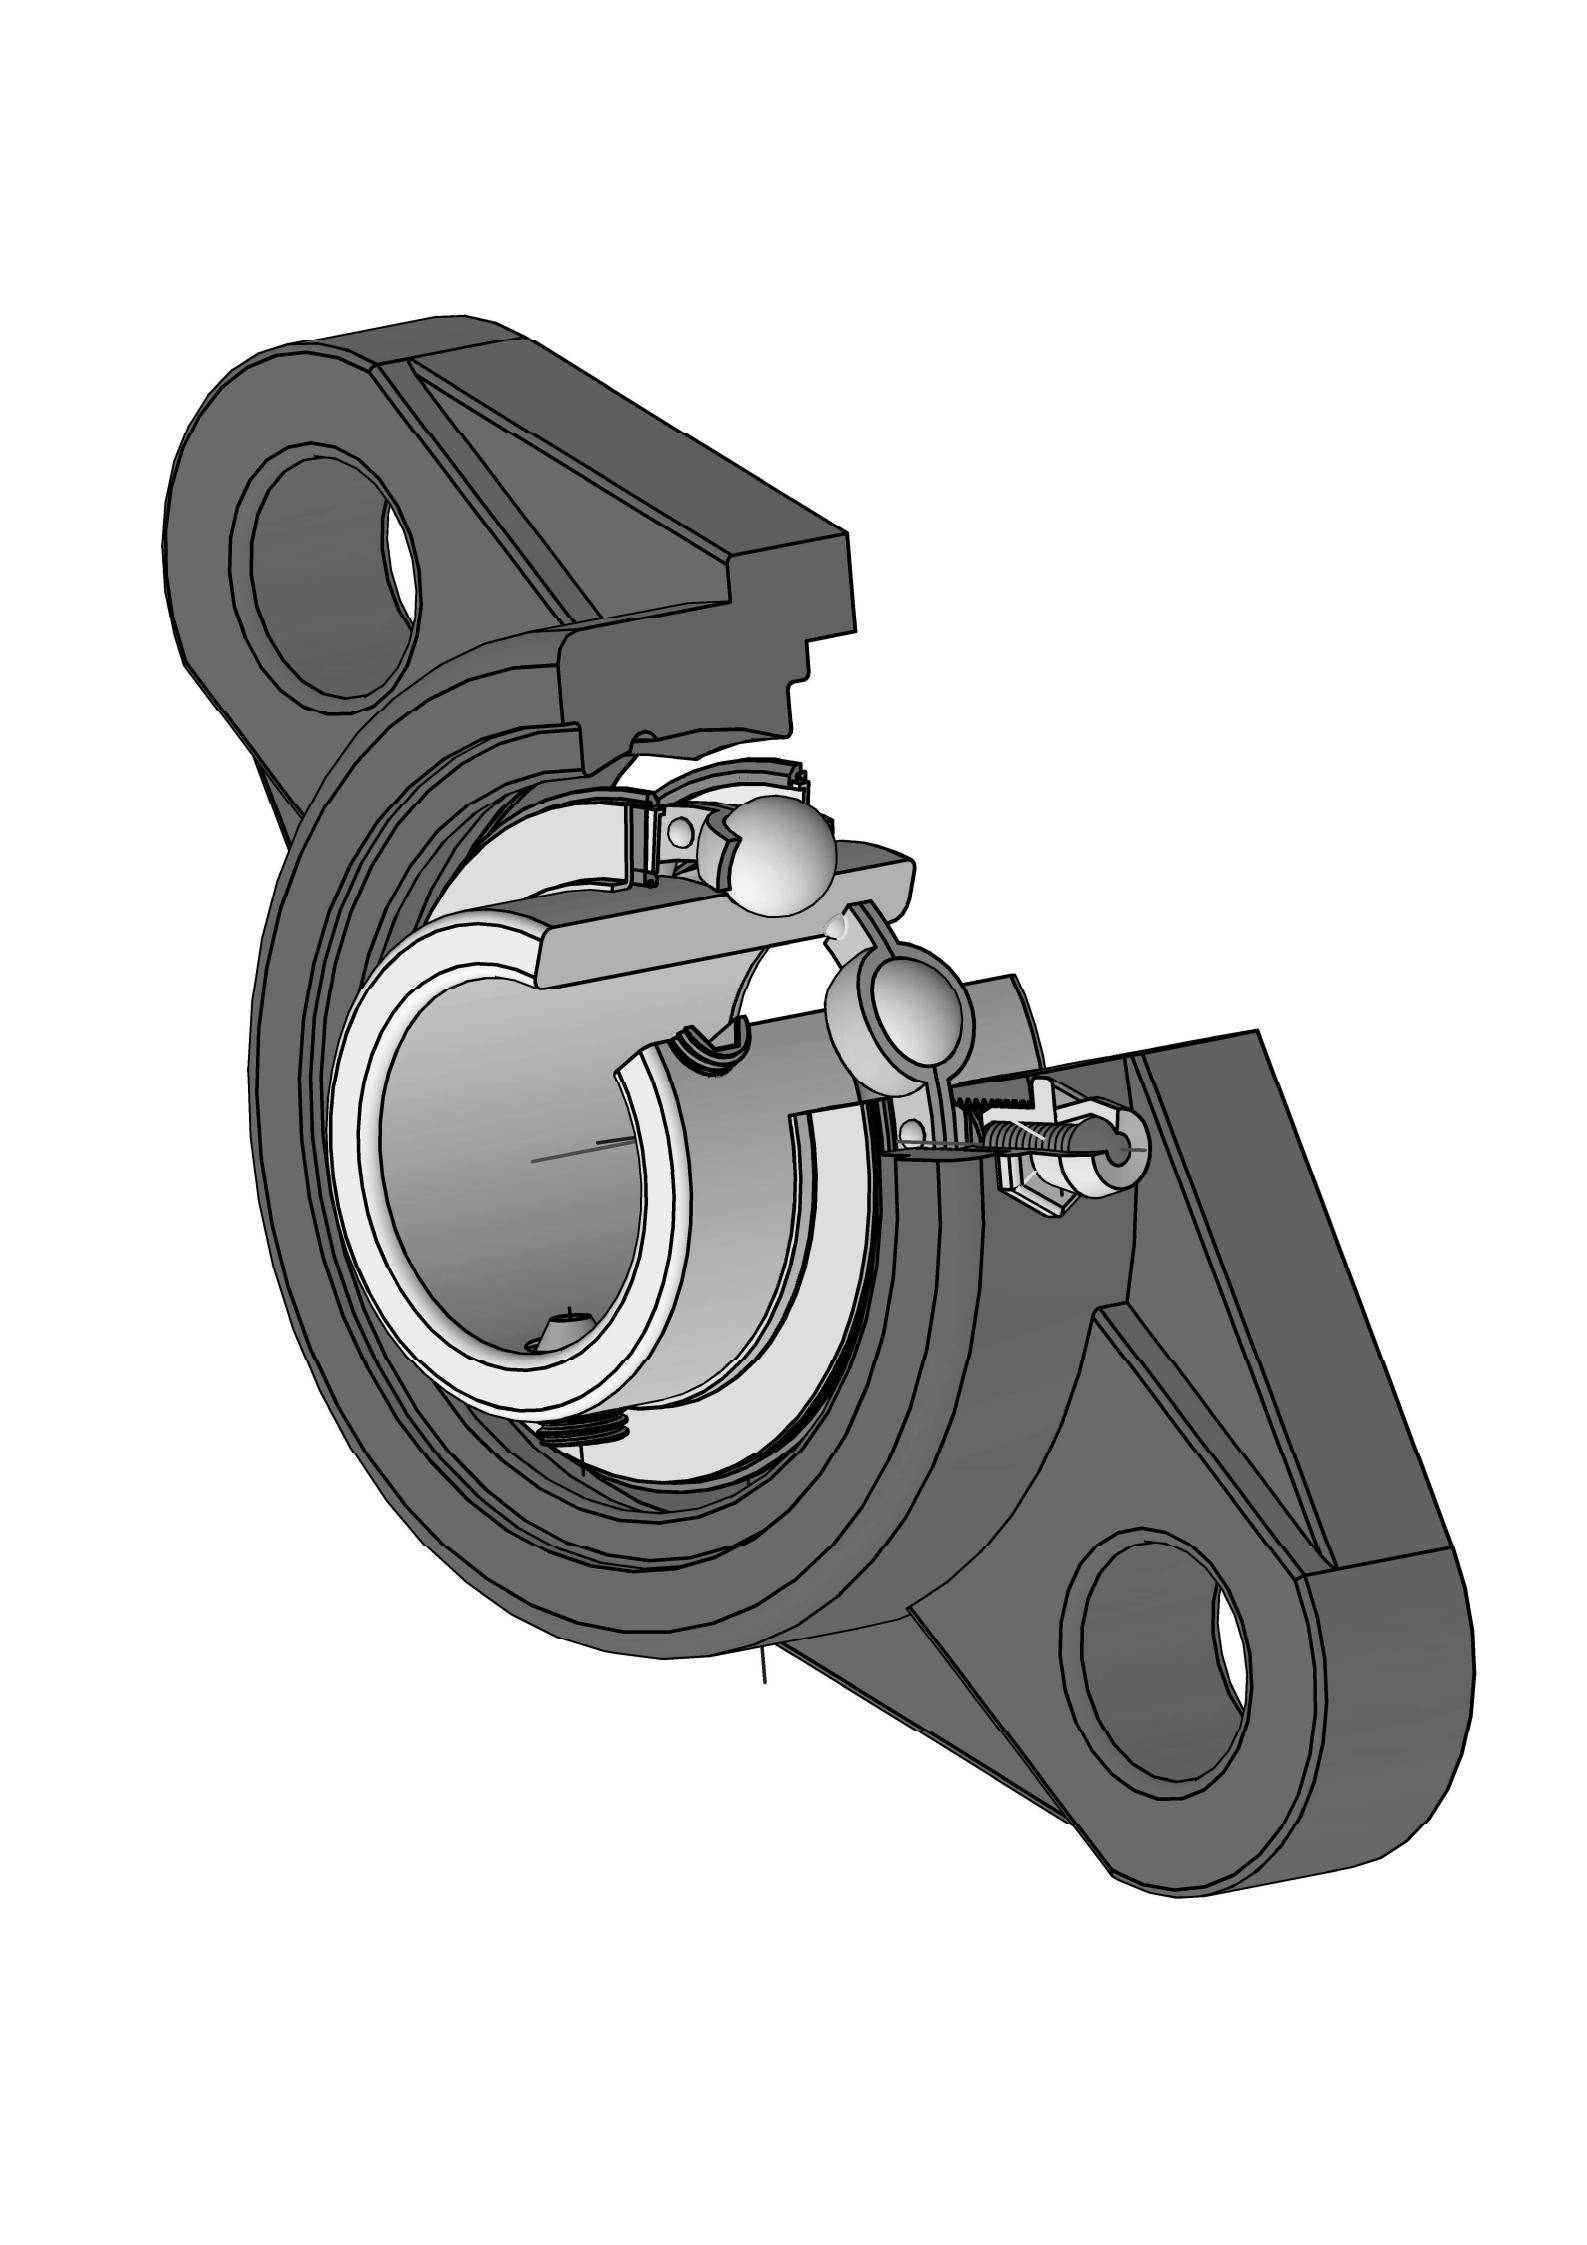 UCFLX05-15 Roa Bolt Oval Flange mitondra vondrona misy 15/16 inch bore